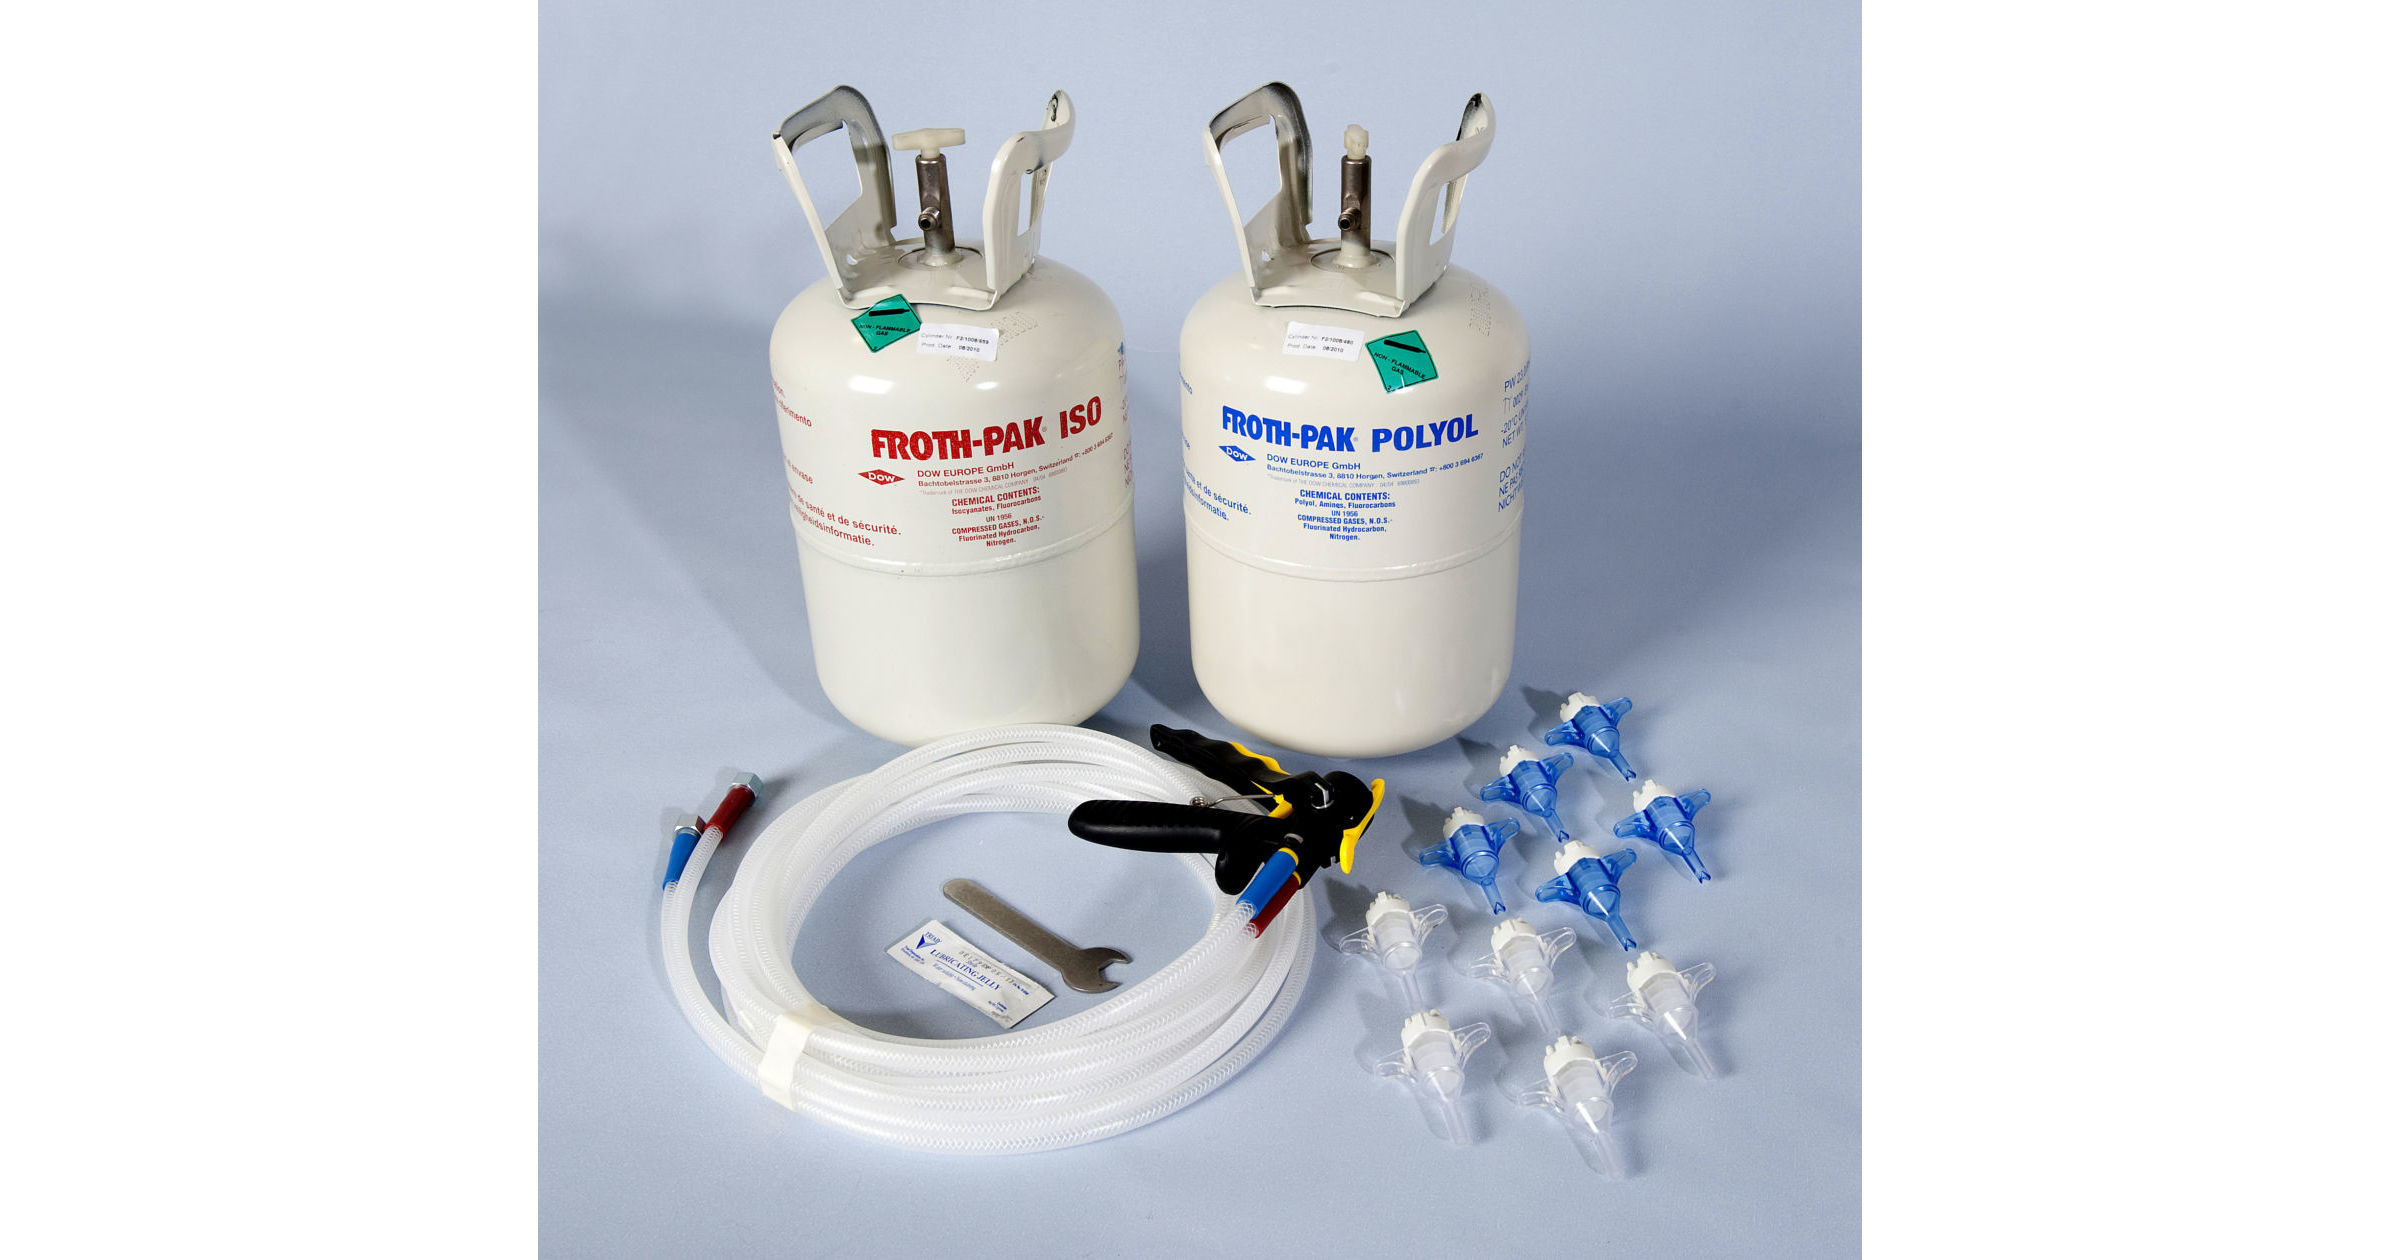 Best ideas about DIY Spray Foam Kit
. Save or Pin Spray Foam Insulation Kits TWISTFIX Now.